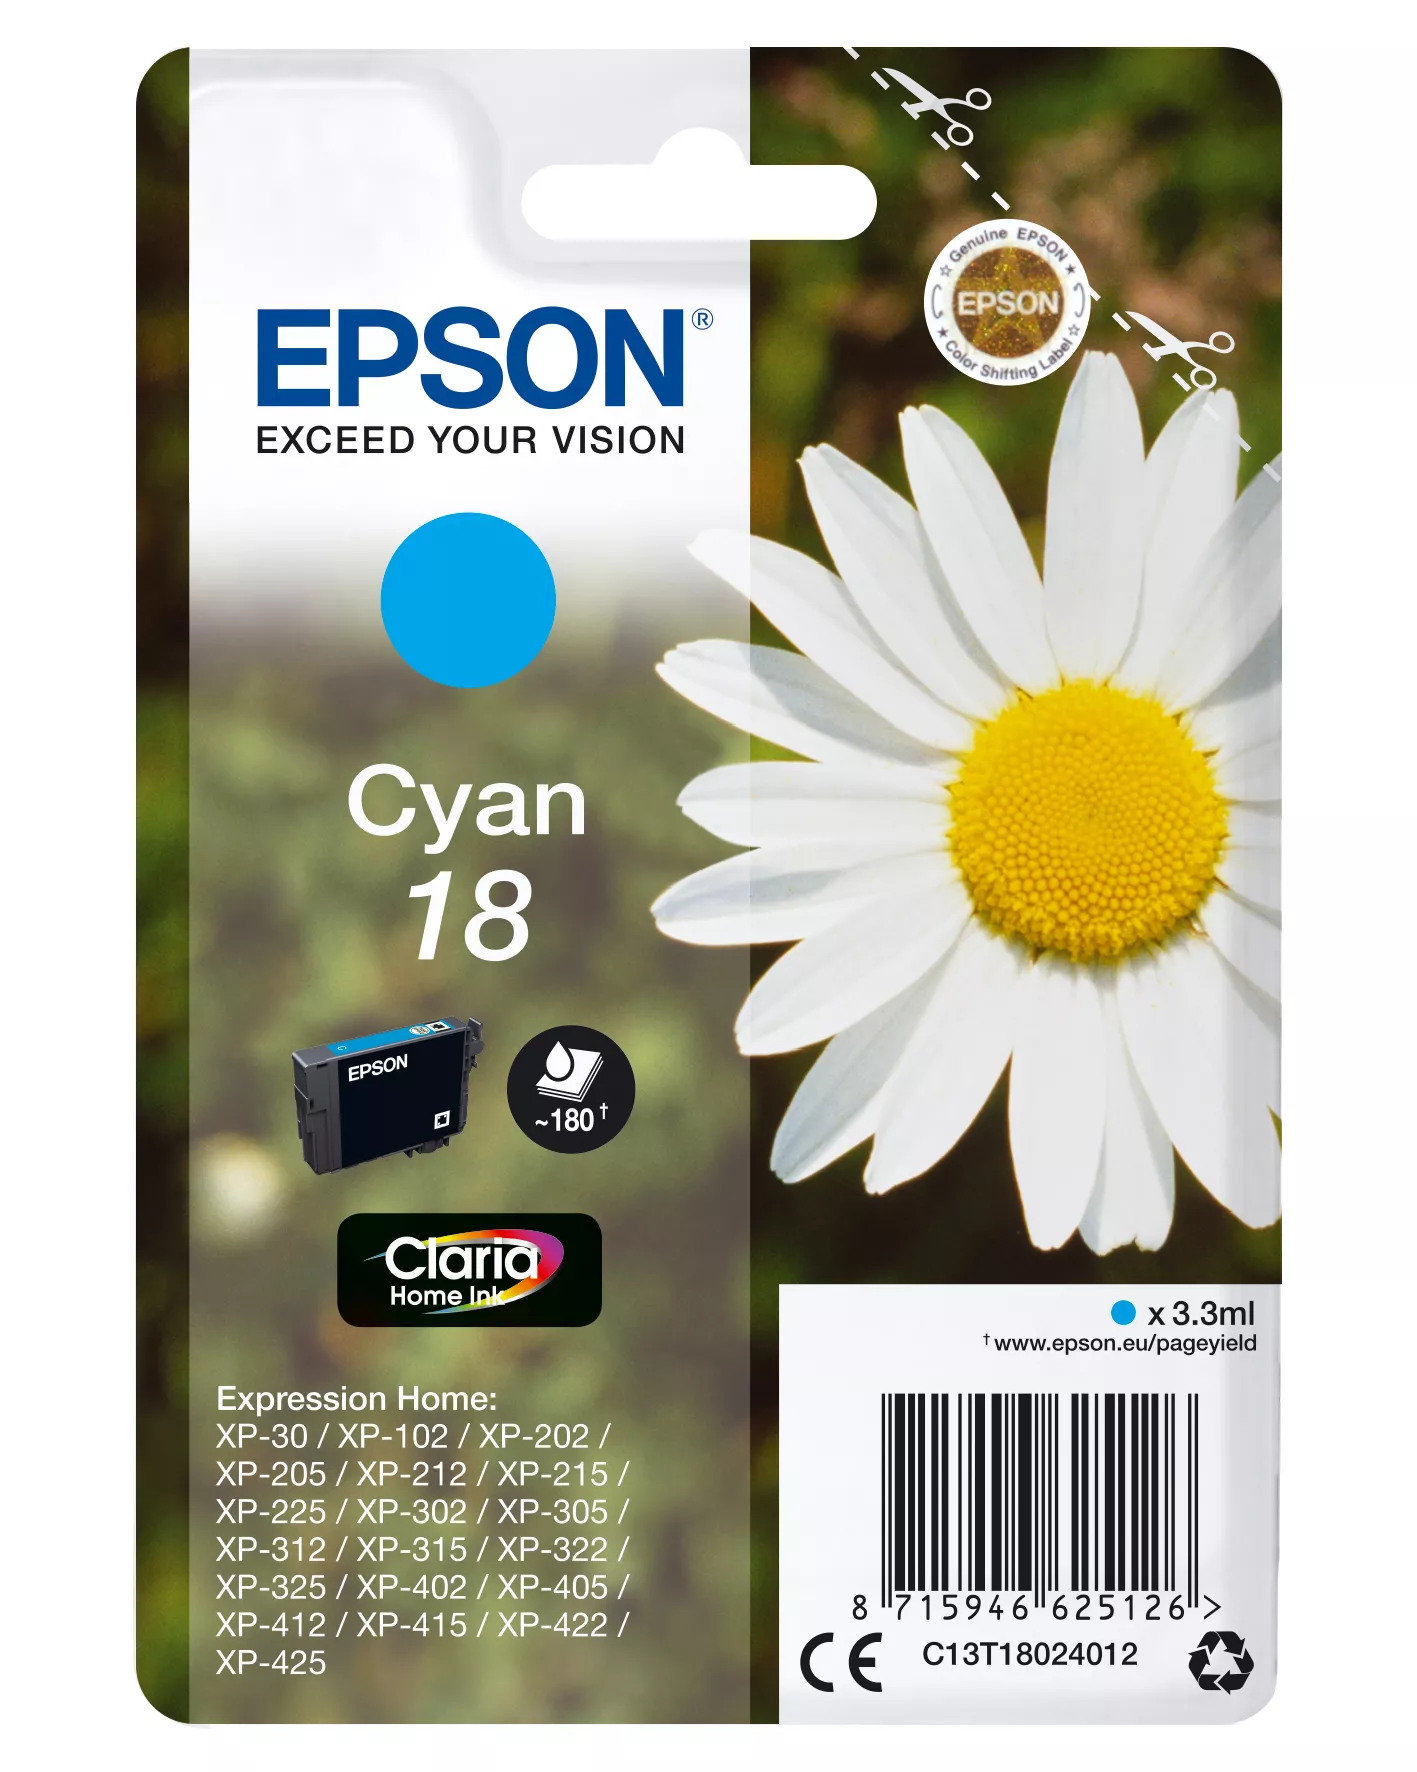 Achat EPSON 18 cartouche dencre cyan capacité standard 3.3ml et autres produits de la marque Epson